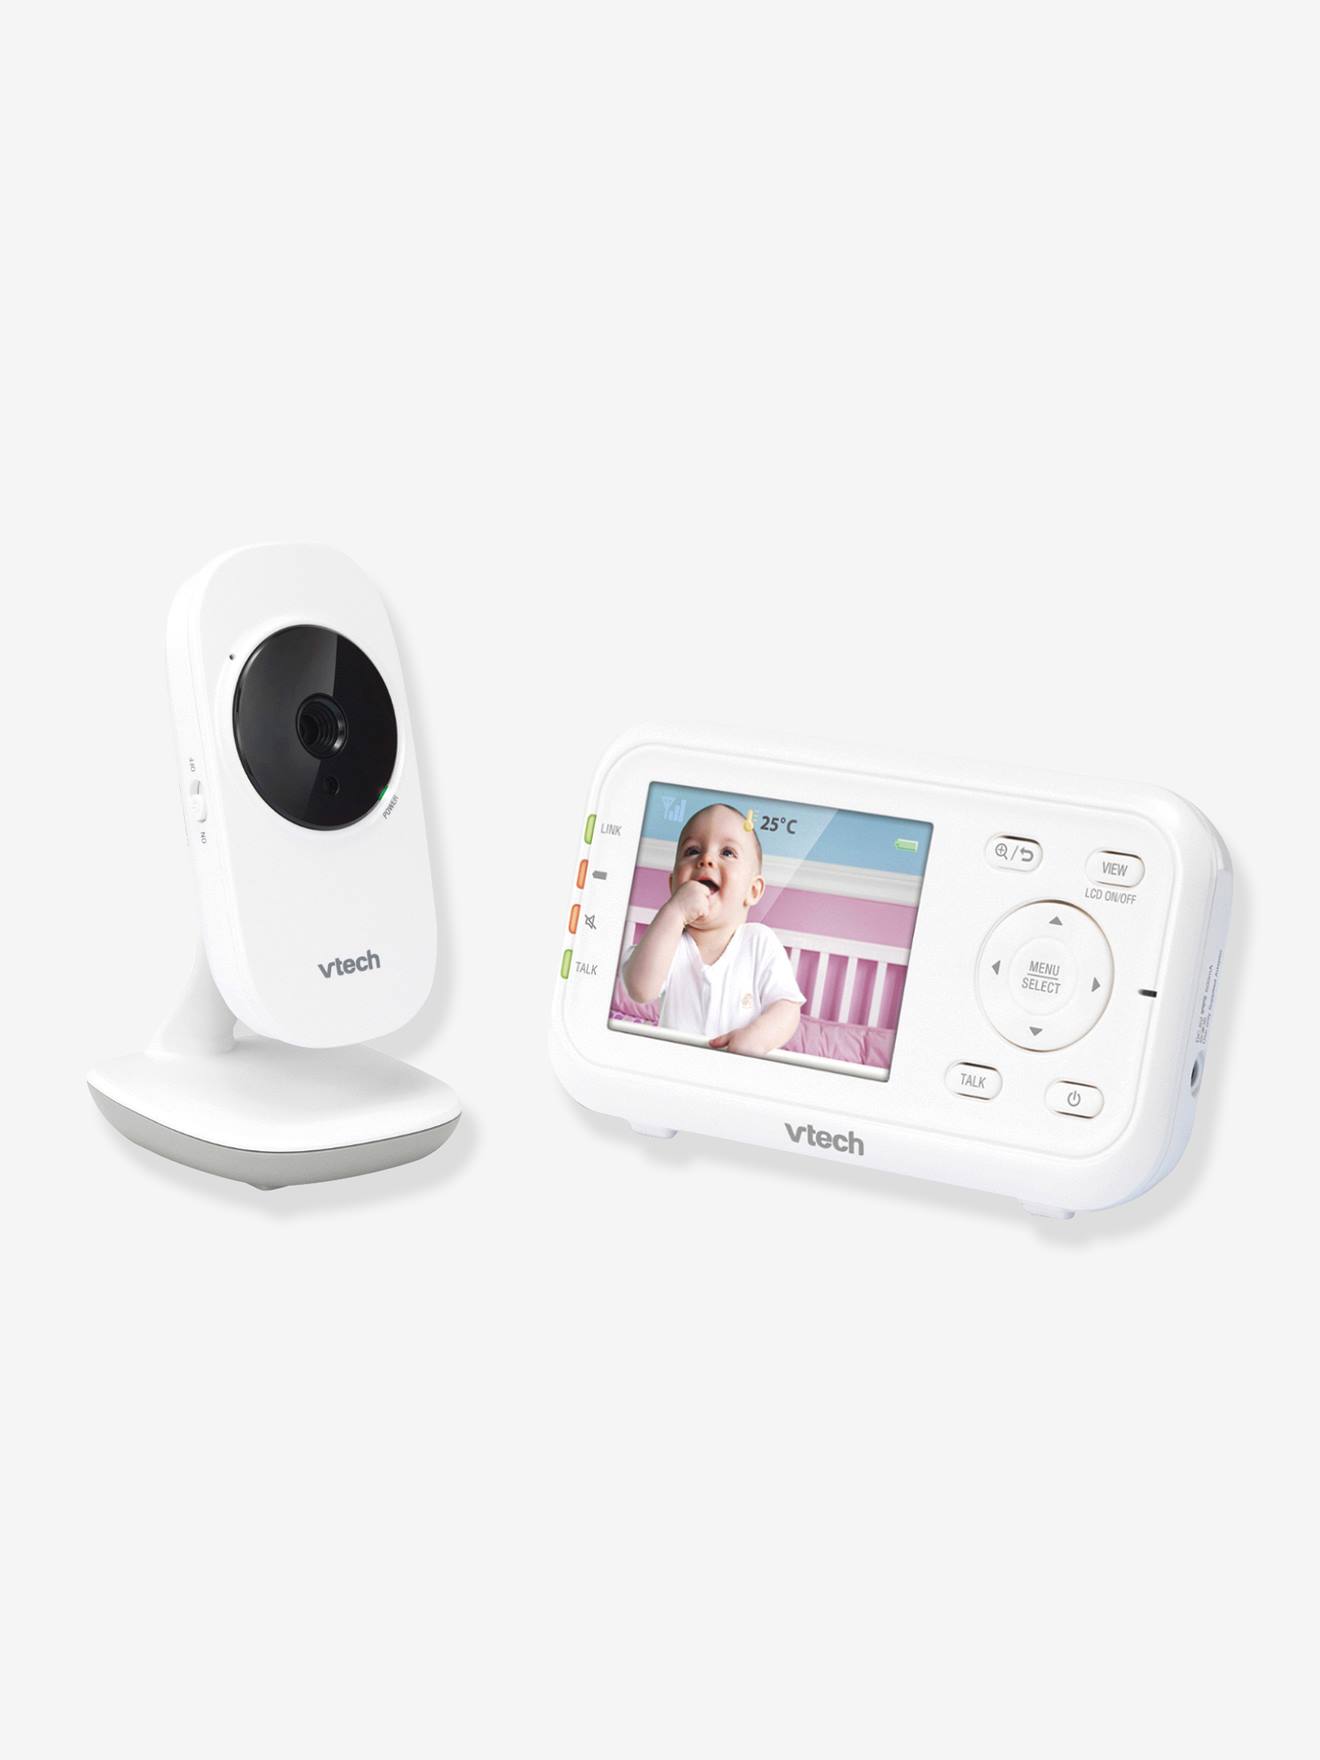 Babyphone vidéo Safe & Sound Video Clear BM3255 VTECH blanc - Vtech